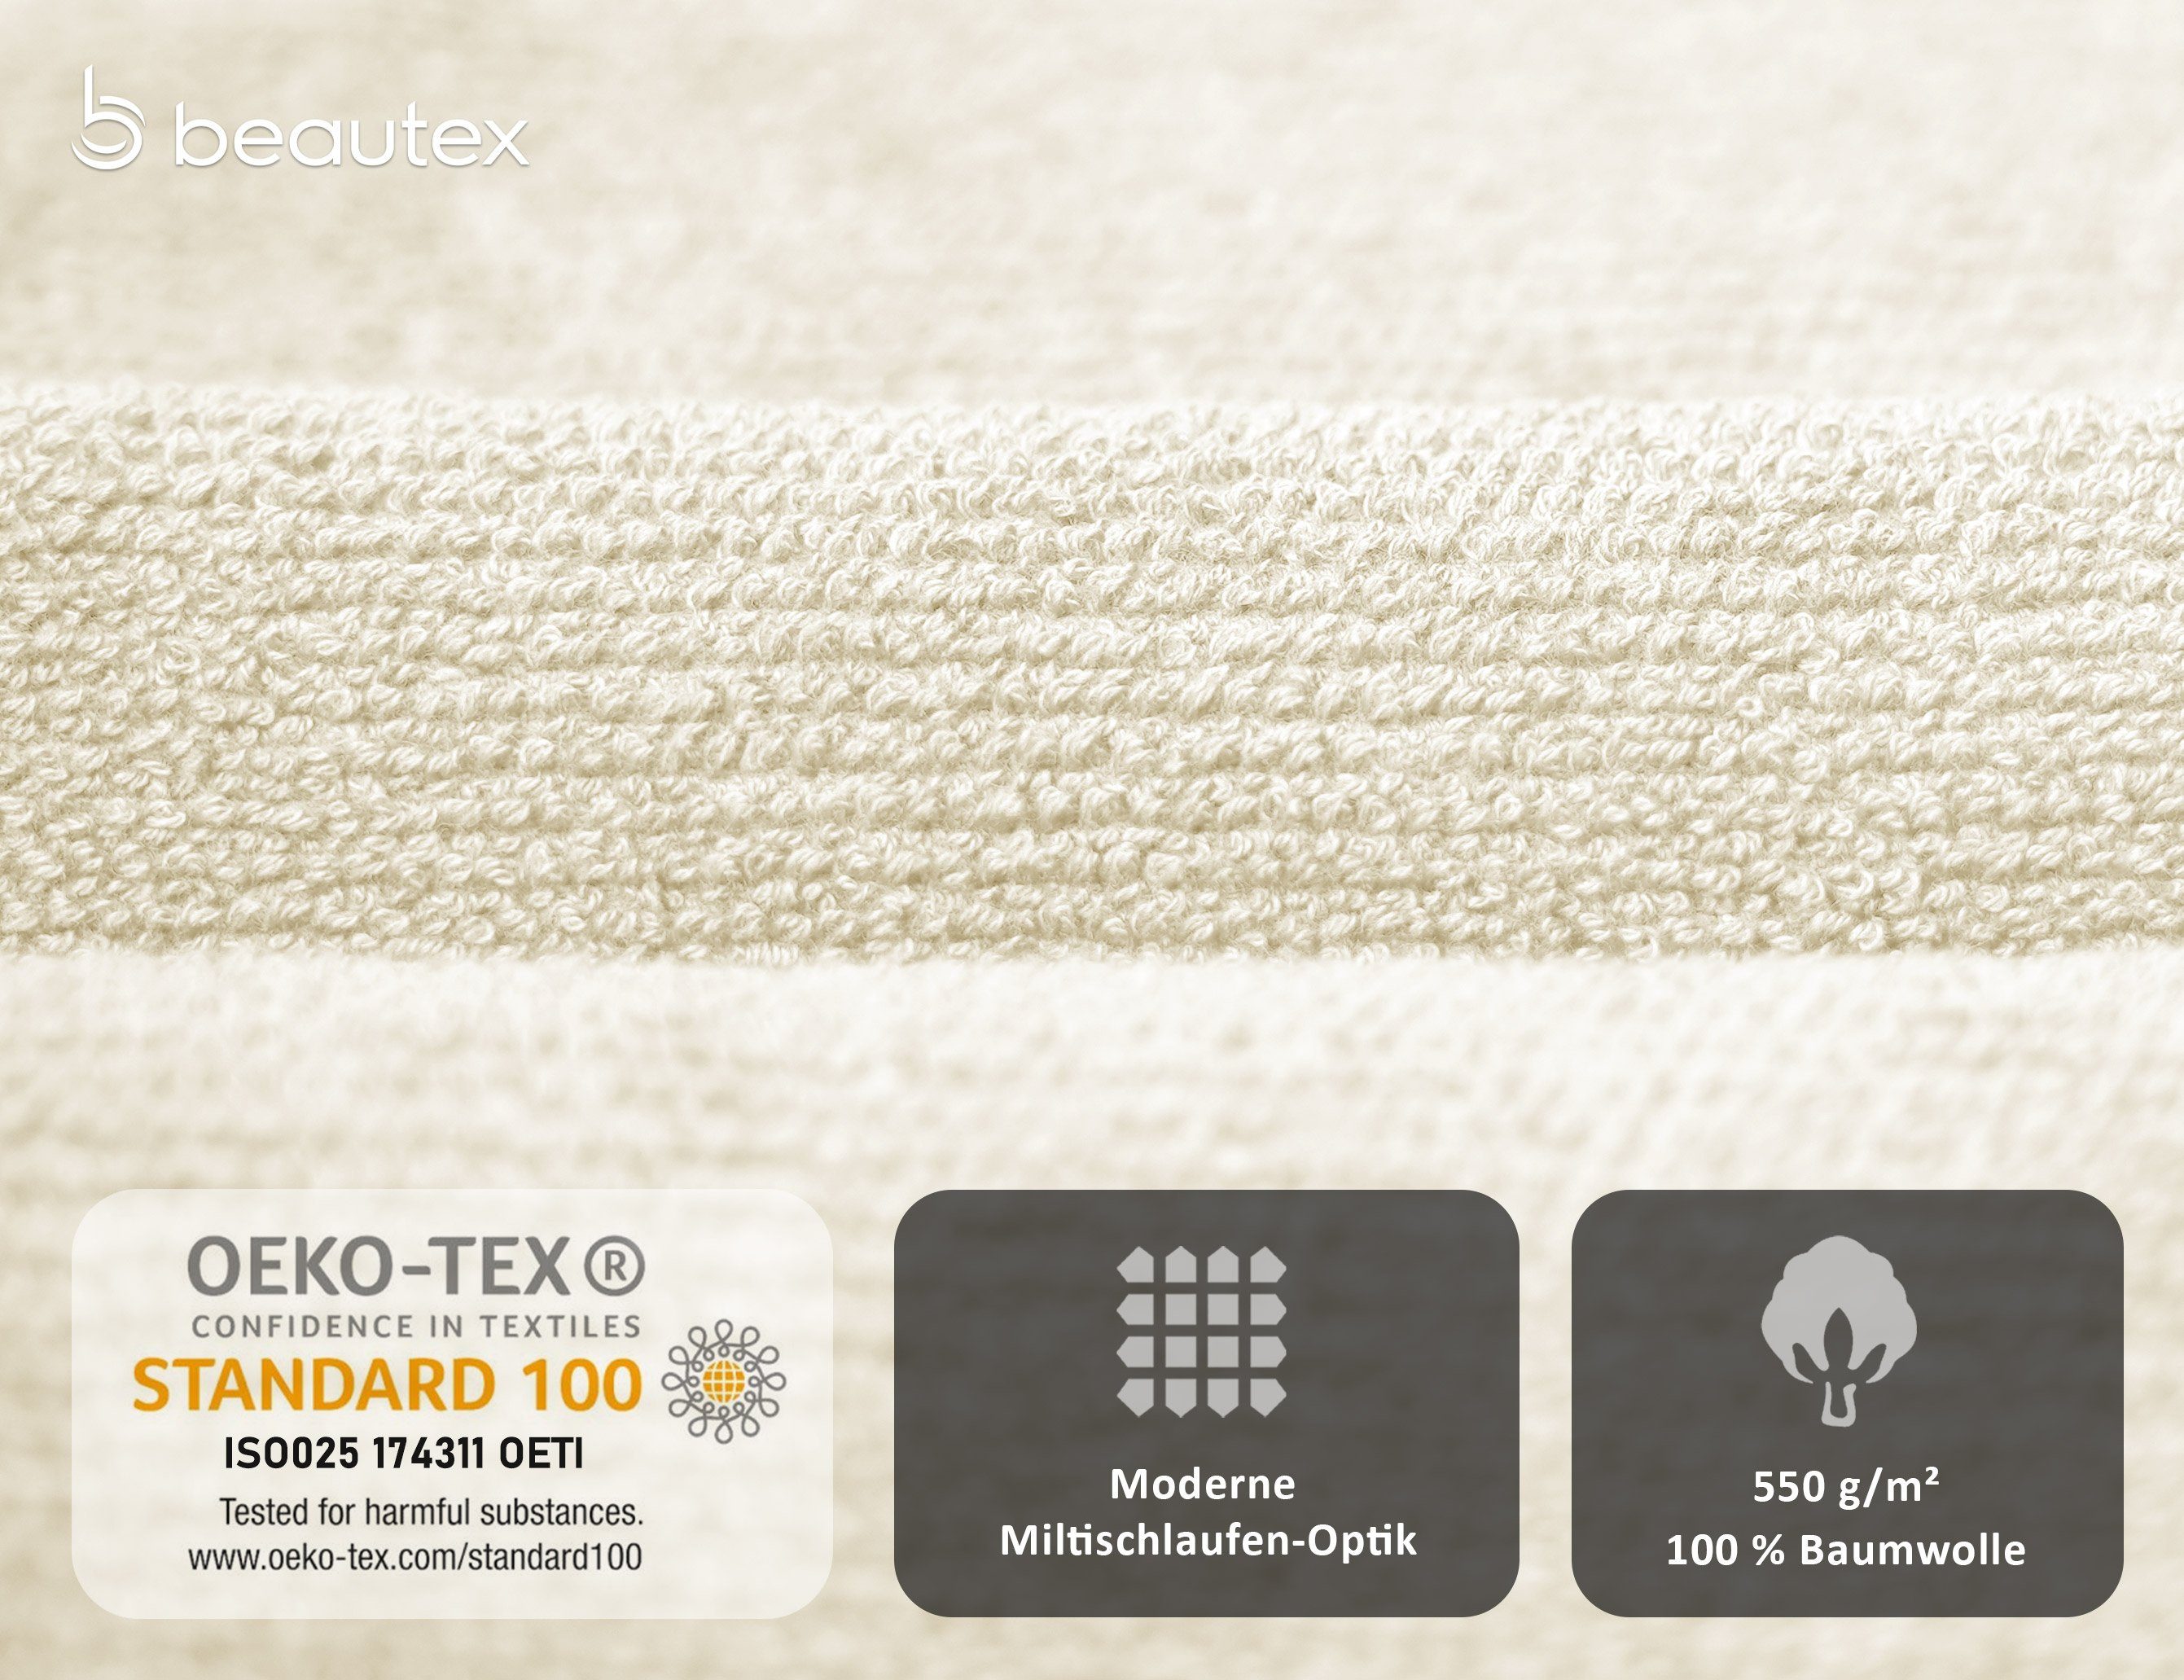 Set Baumwolle Made 100% Beautex (Multischlaufen-Optik, Creme Europe, Premium in Handtuch aus 550g/m) Frottier Set Set, Frottier, Handtuch